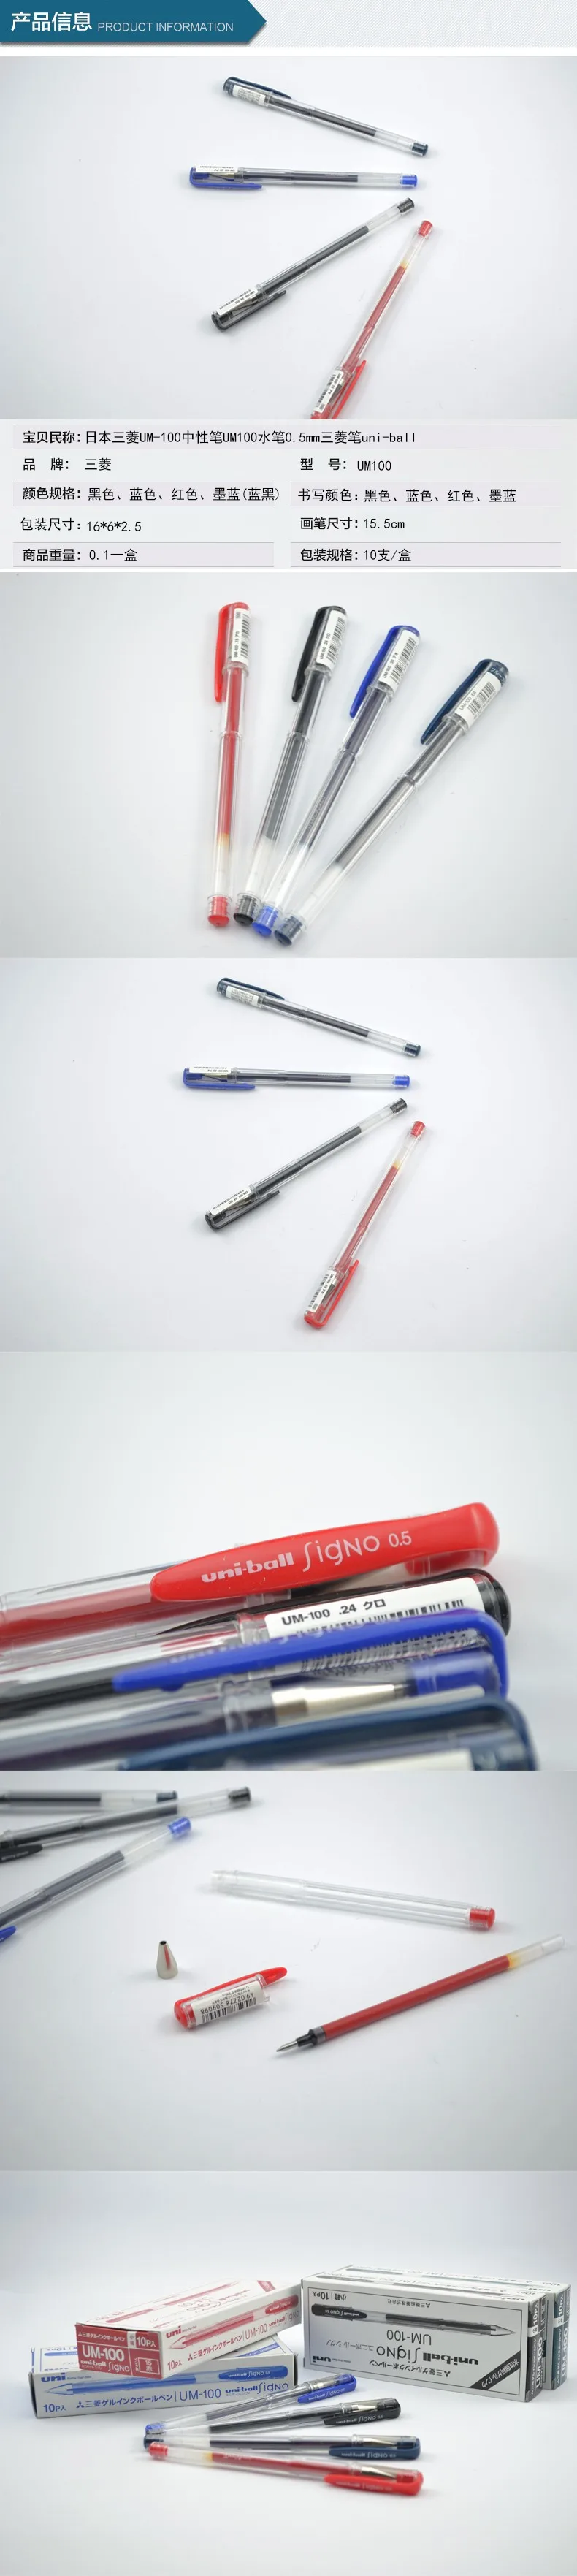 Высококачественная японская UM-100 Mitsubishi 0,5 мм гелевая ручка для офиса корейские школьные принадлежности канцелярские милые каваи Специальное предложение 10 шт